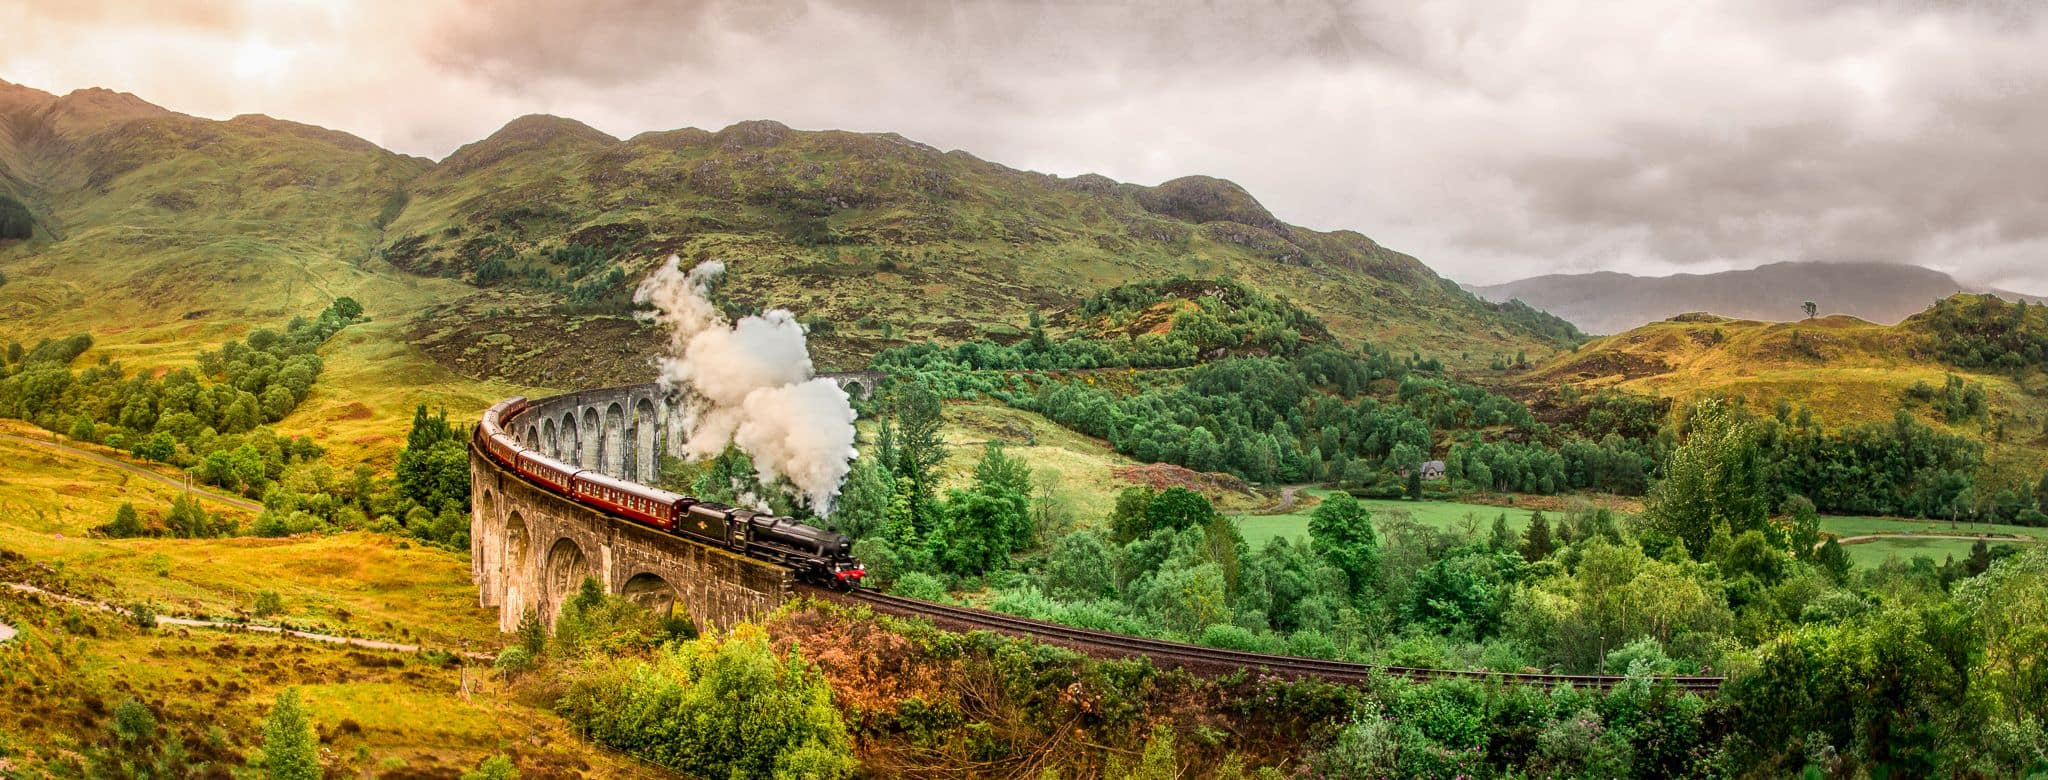 scotland tour by rail